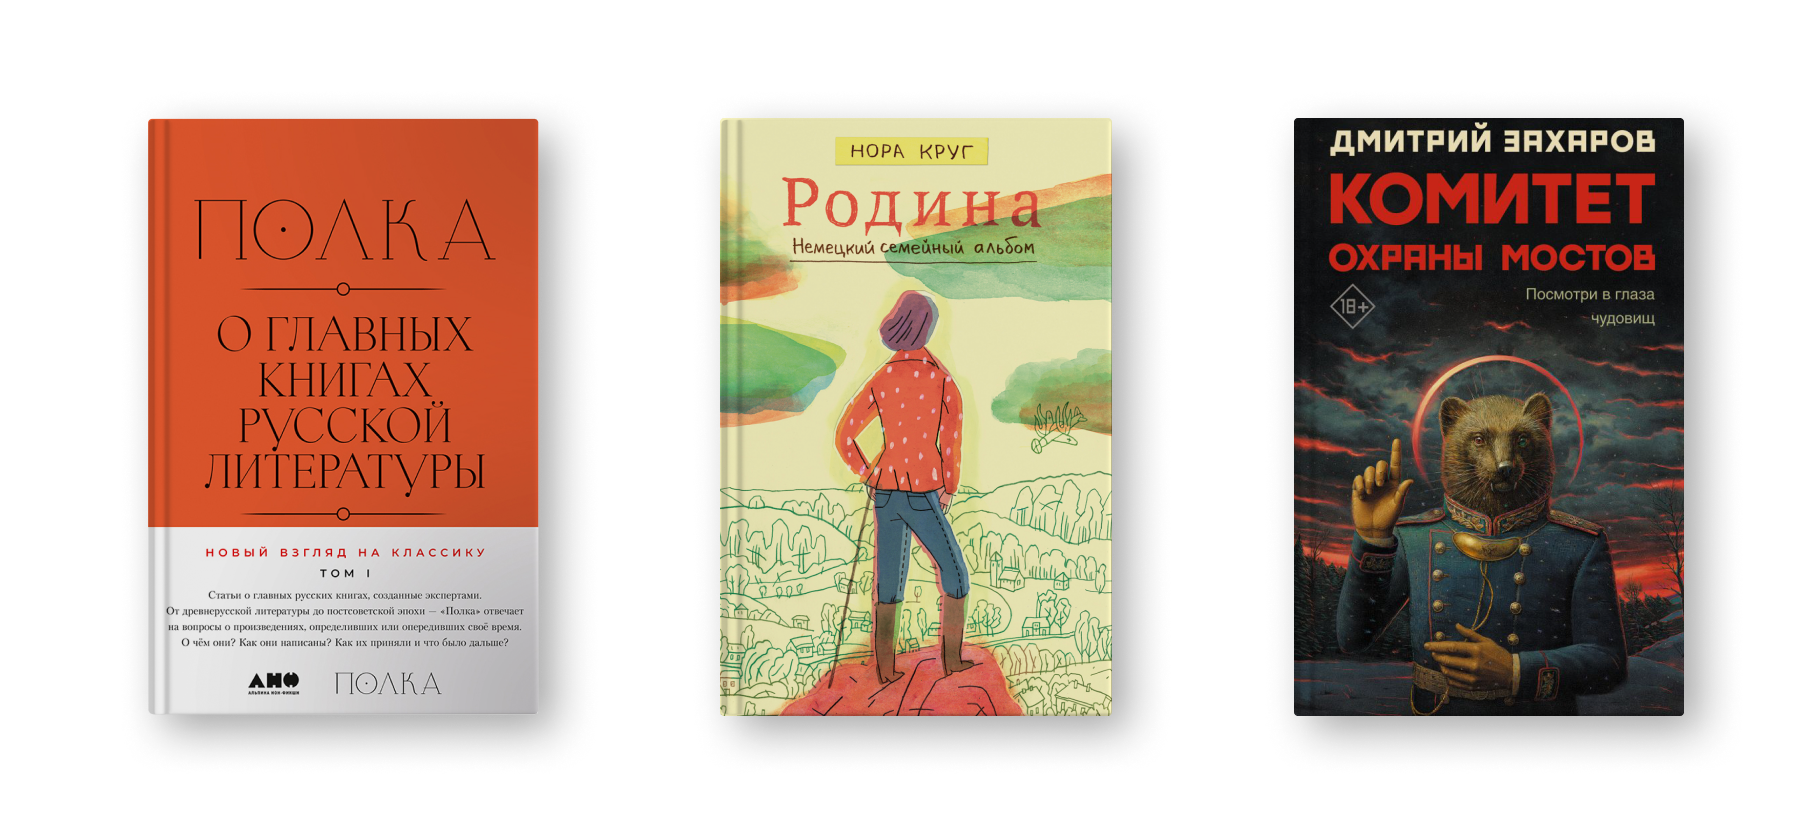 Что купить на московской книжной ярмарке Non/fiction: 21 любопытное издание